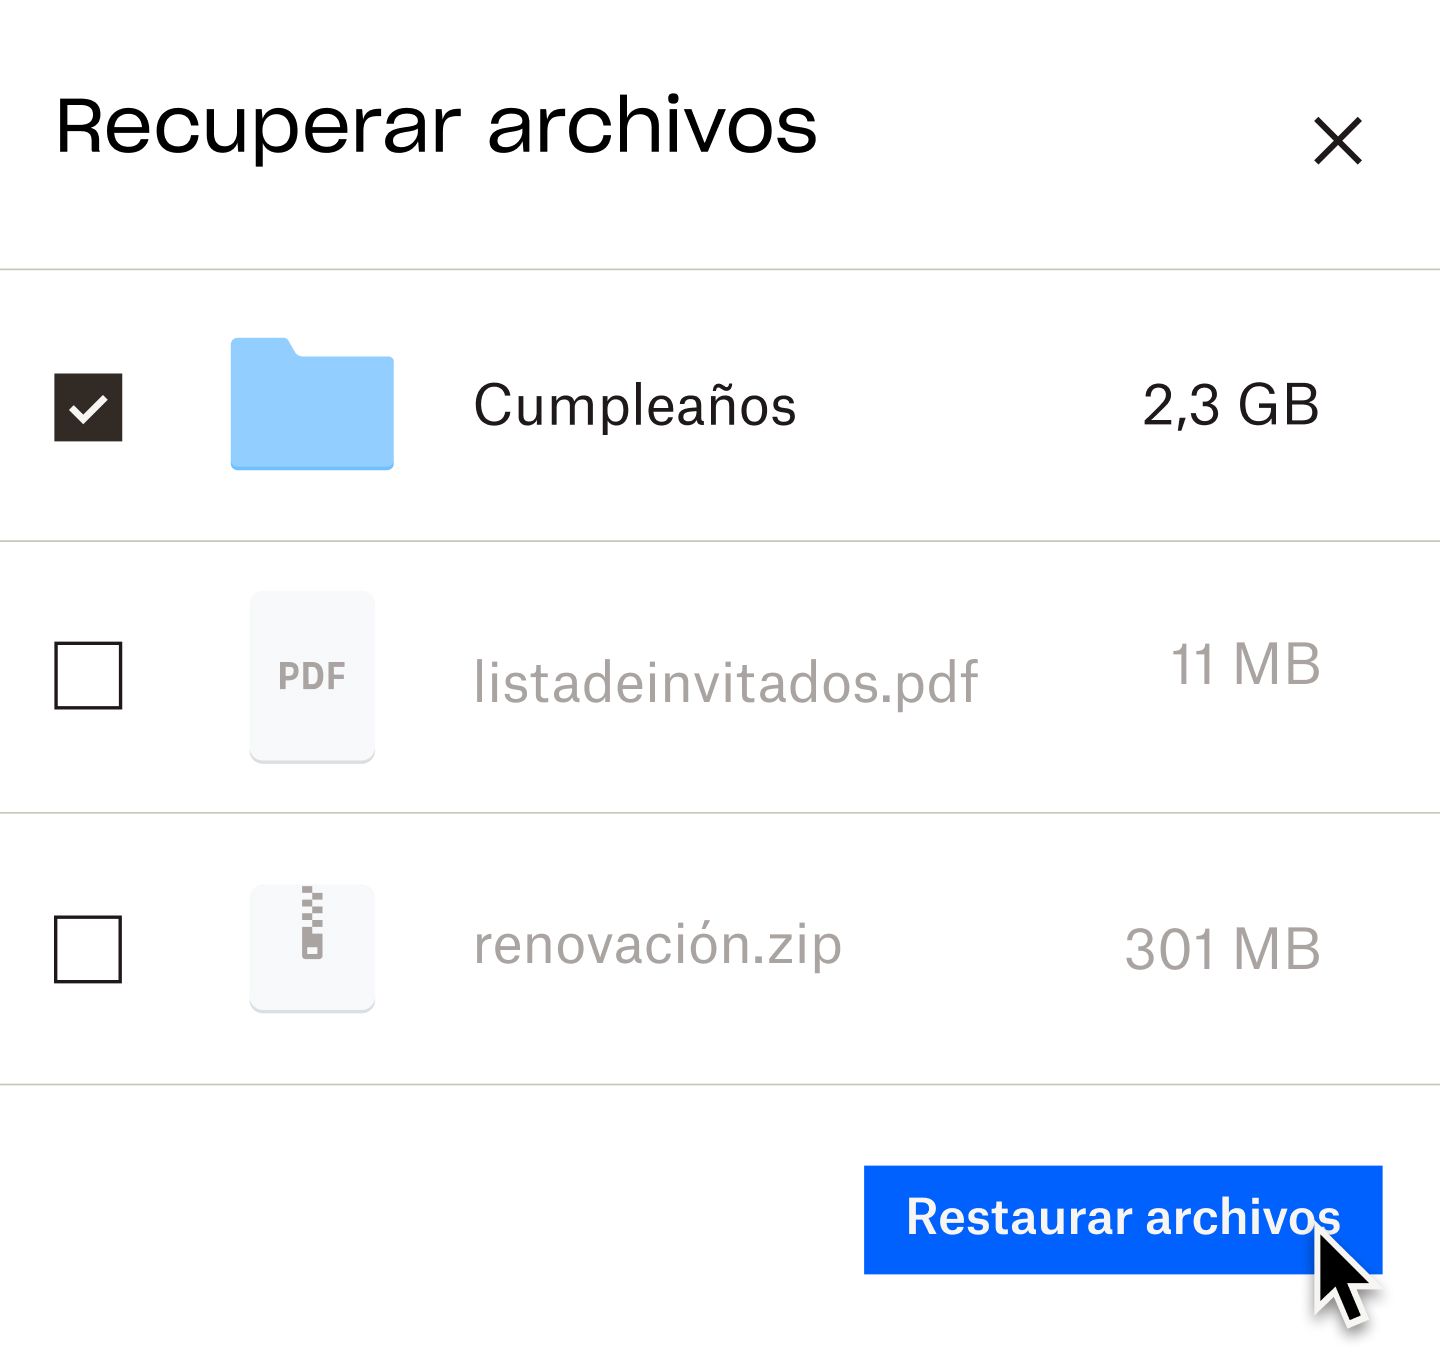 Un usuario que hace clic en un botón azul denominado “restaurar archivos”